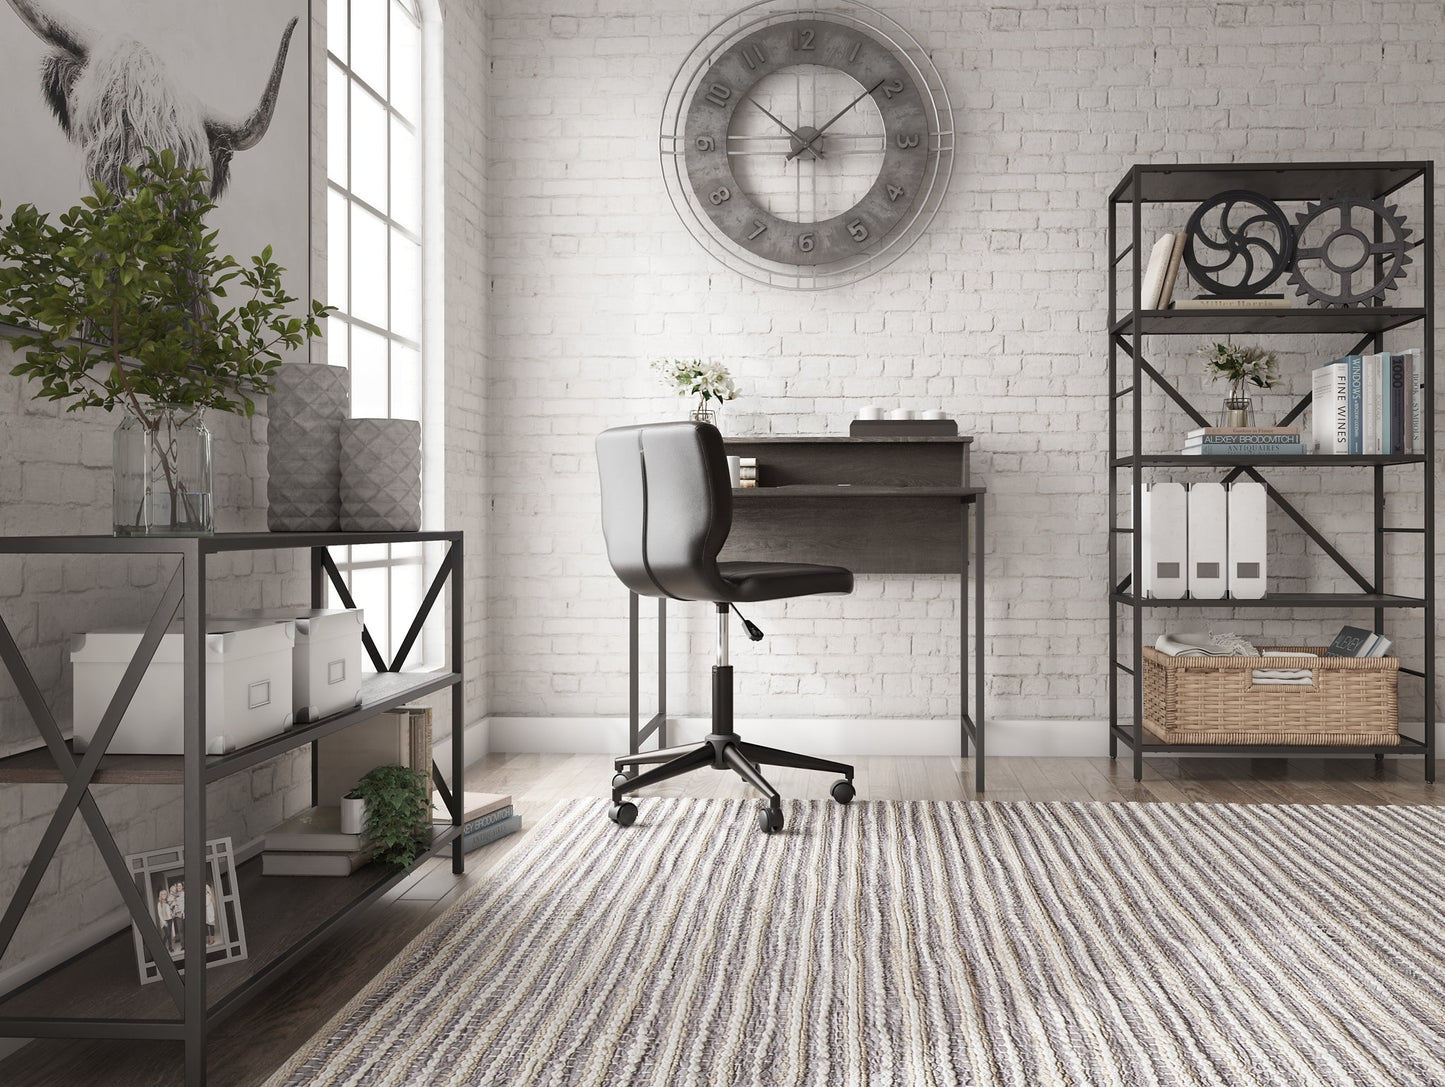 Freedan Home Office Desk at Cloud 9 Mattress & Furniture furniture, home furnishing, home decor